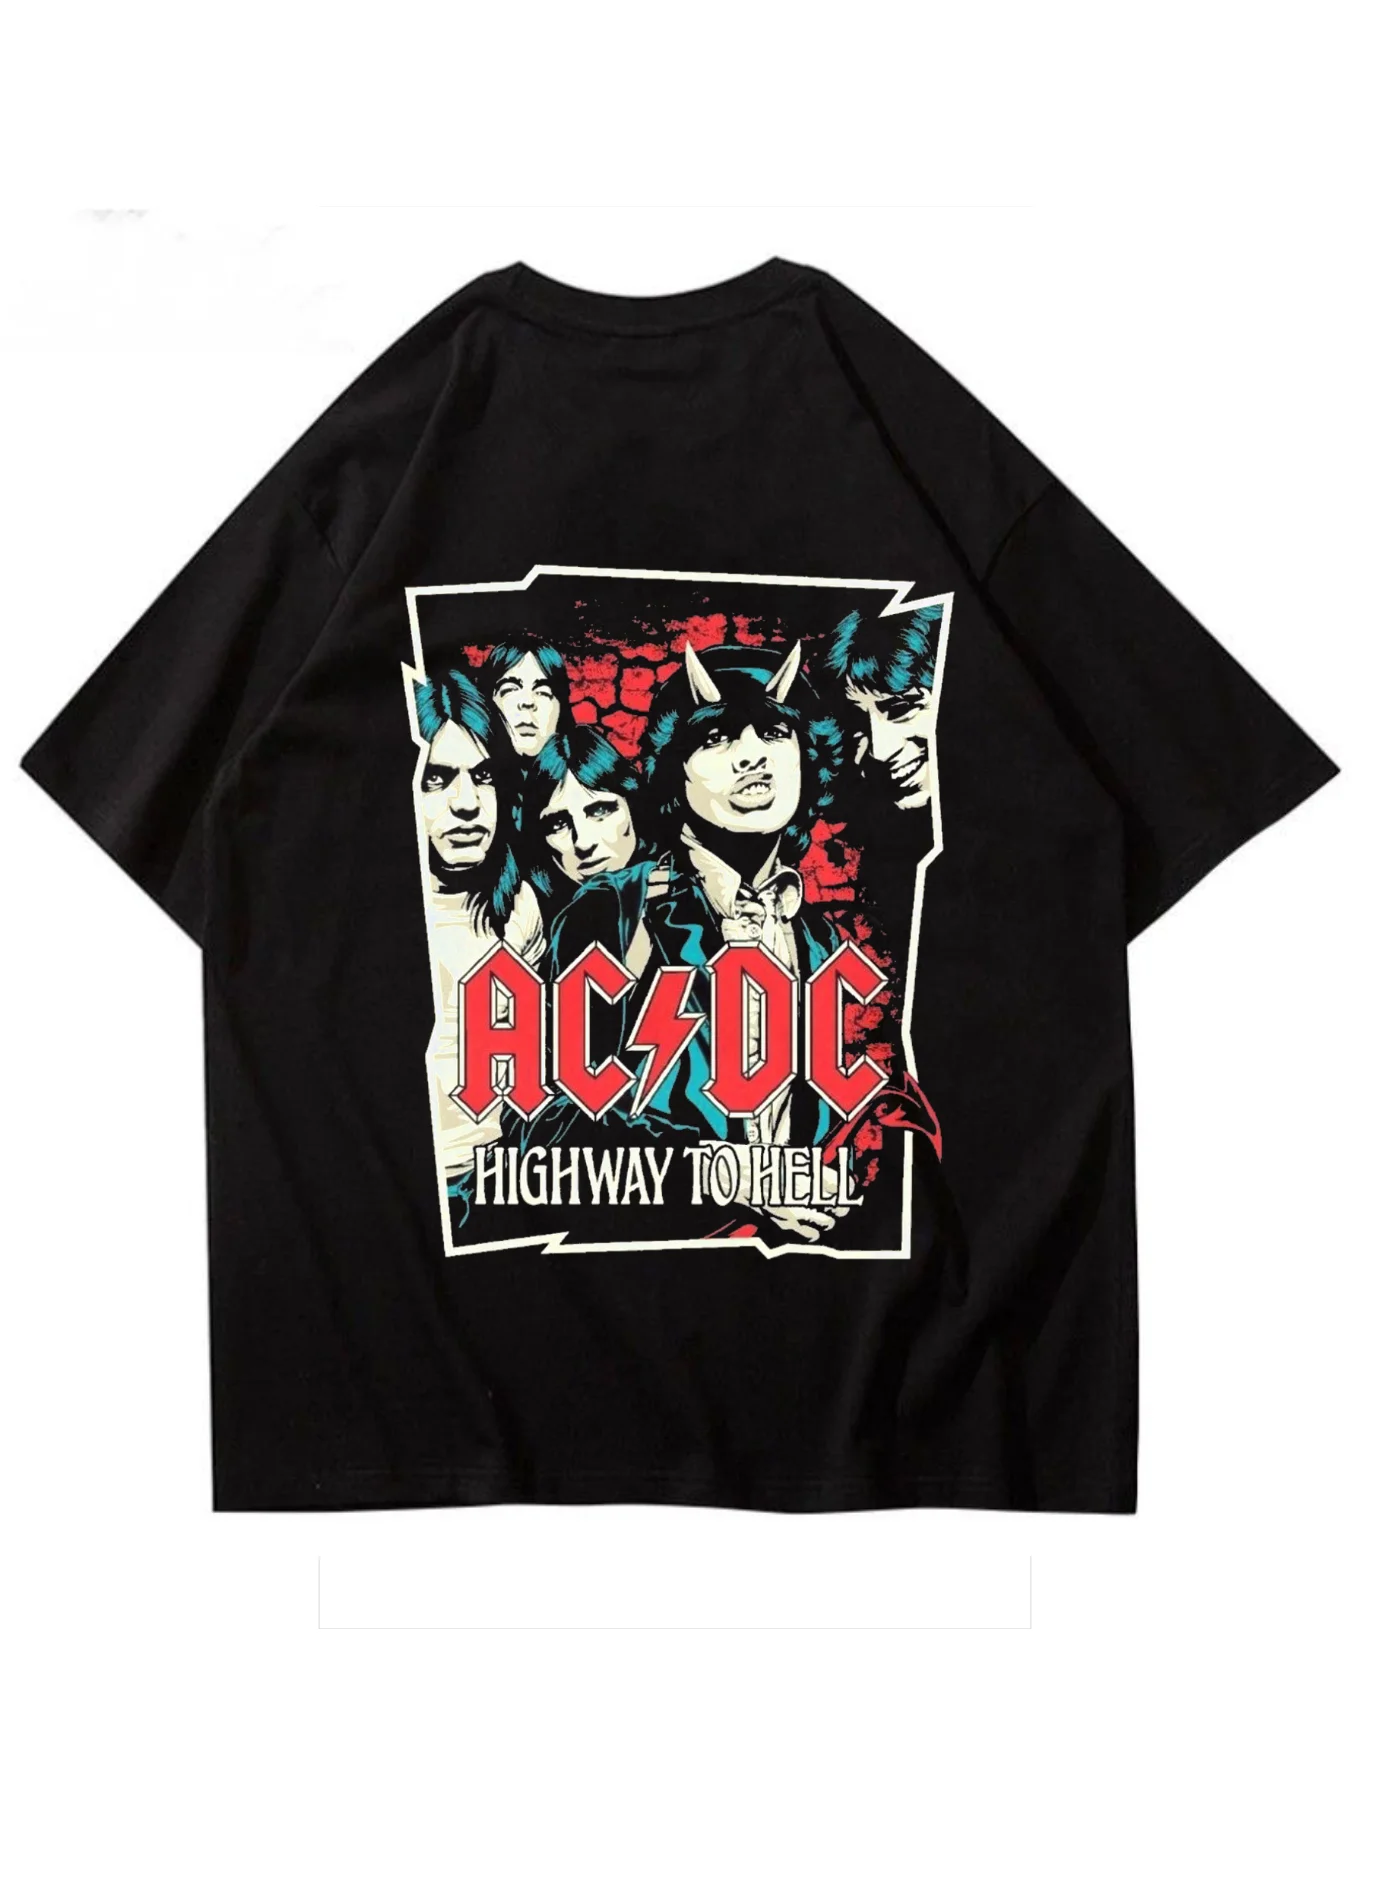 AC DC Oversized Tshirt